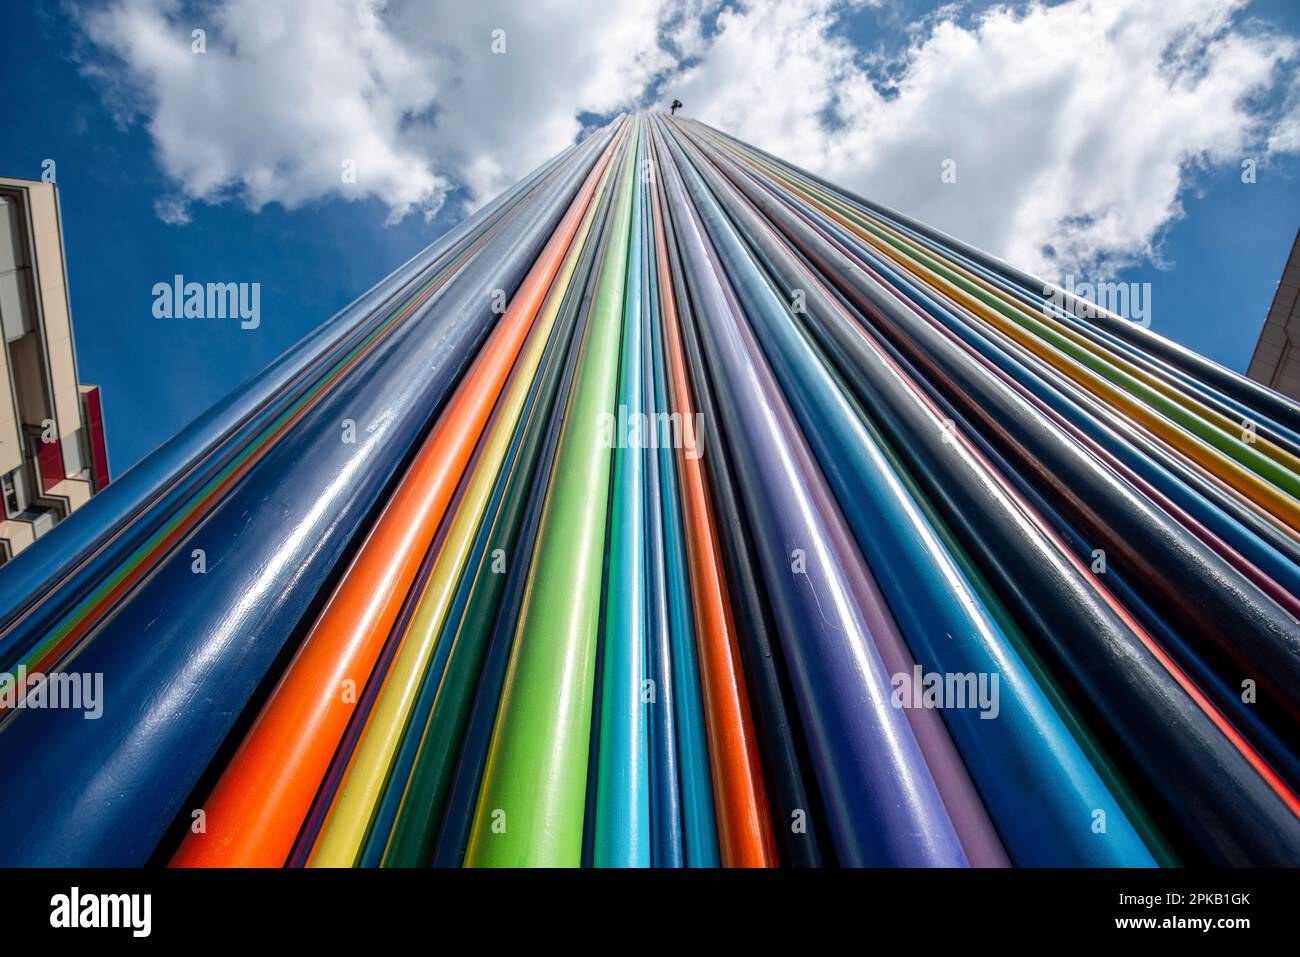 Künstlerische Installation von Regenbogen farbigen Röhren im La Defense District in Paris Frankreich Stockfoto